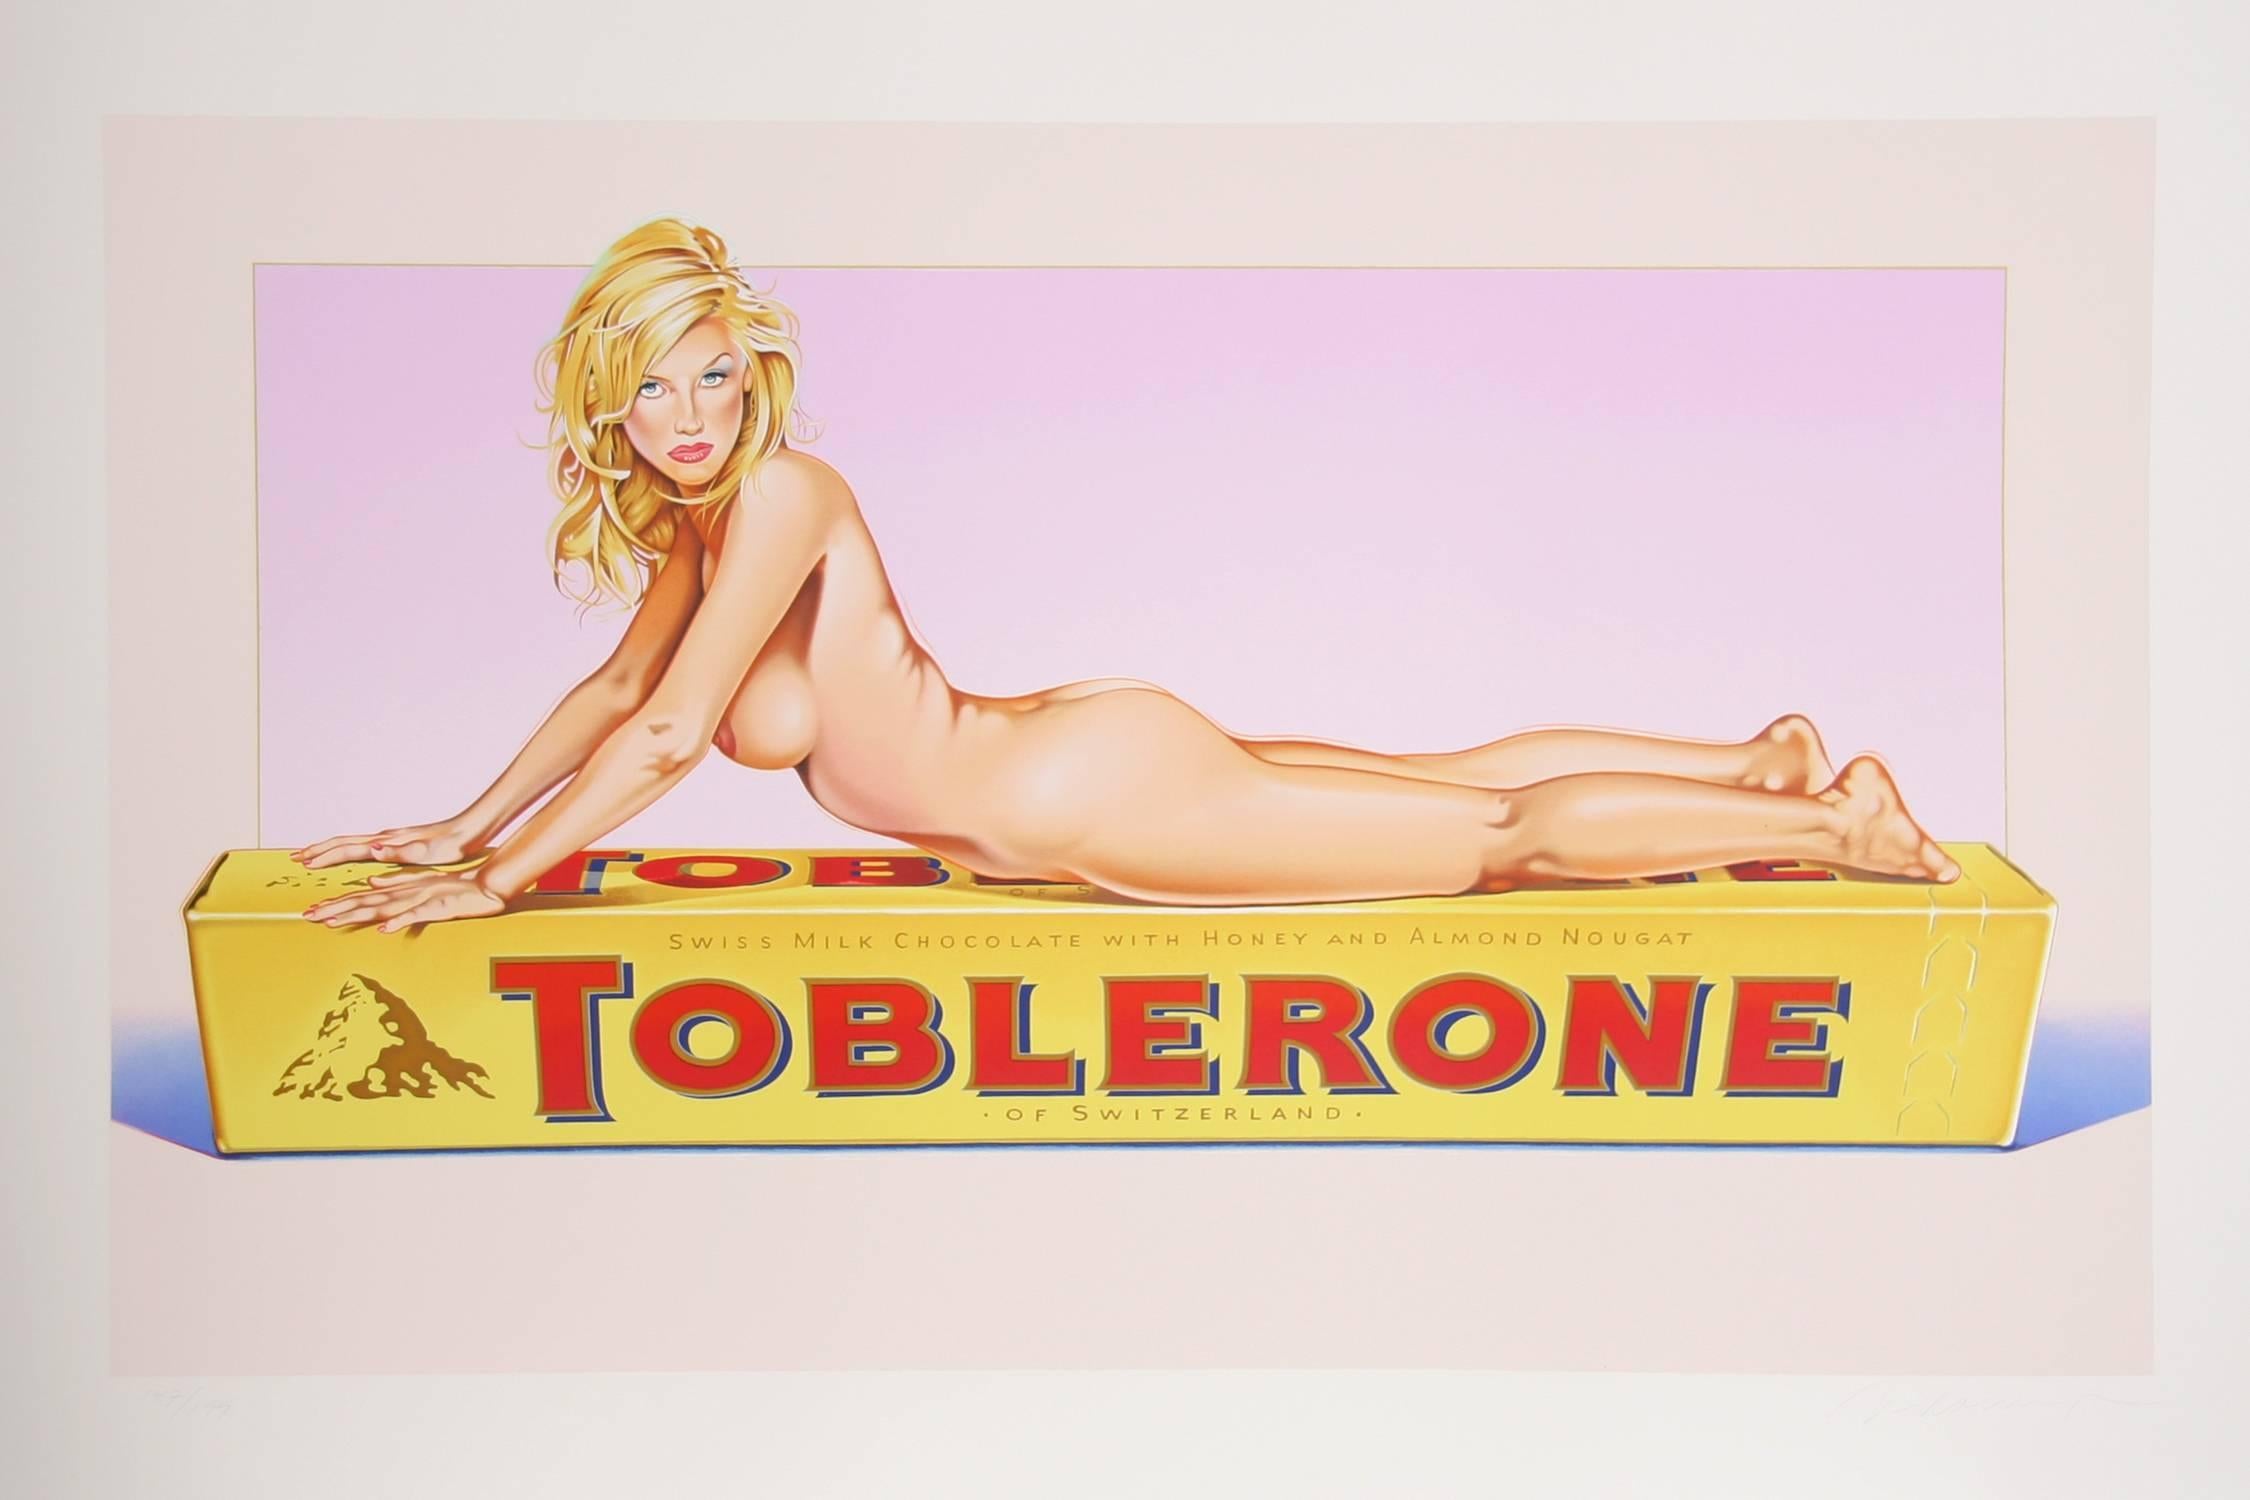 Artistics : Mel Ramos (Américain, né en 1935)
Titre : Toblerone Tess
Année : 2007
Médium : Lithographie, signée et numérotée au crayon
Édition : 199
Taille : 30 in. x 44.5 in. (76.2 cm x 113.03 cm)